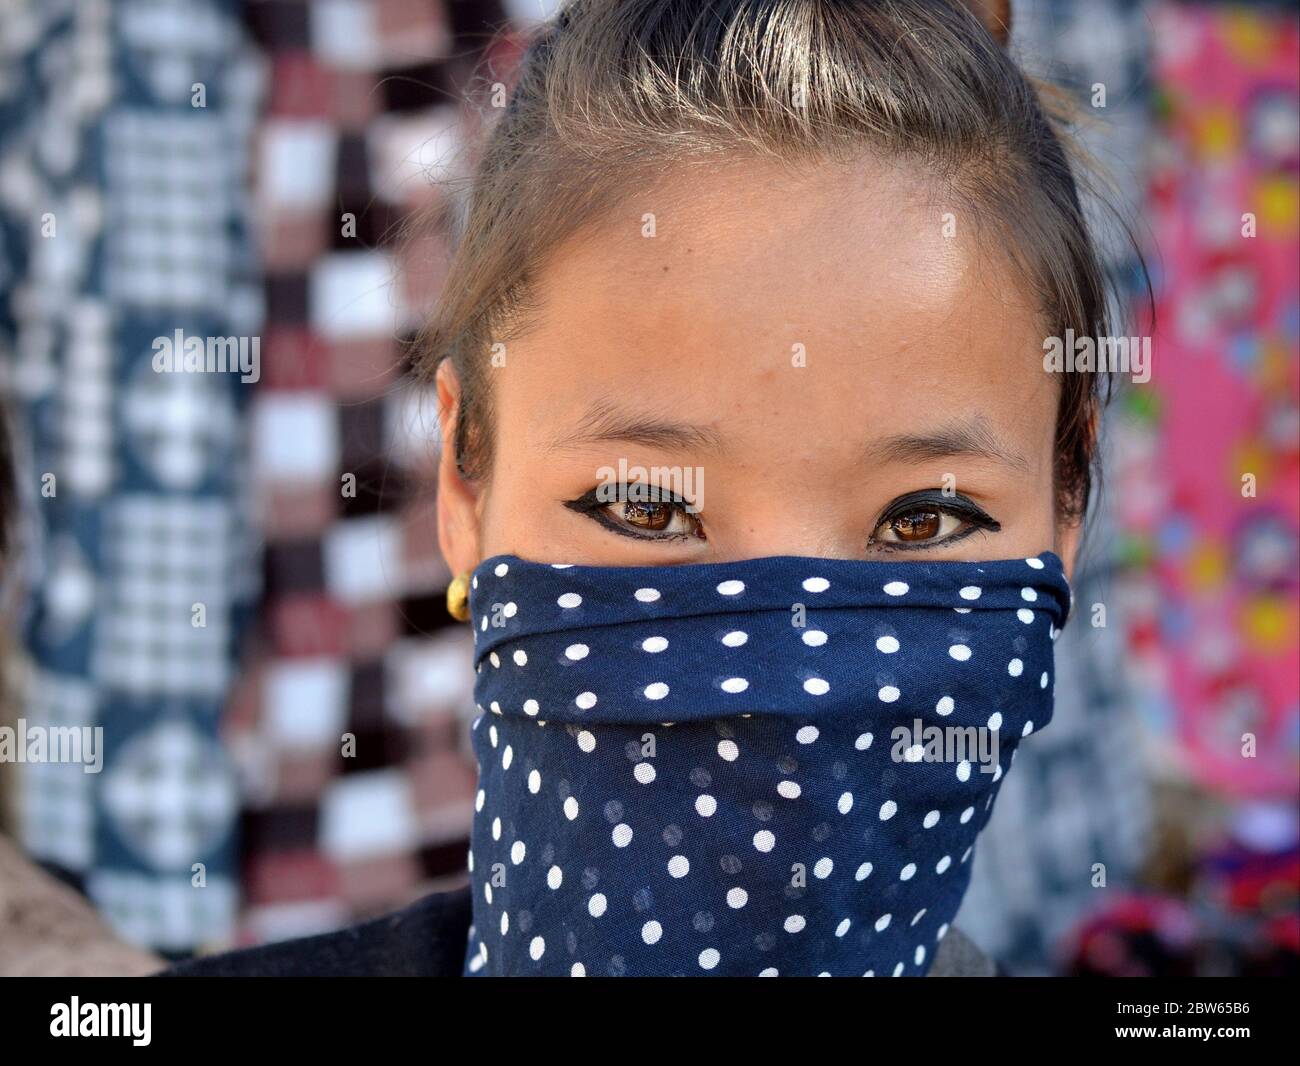 Une jeune femme angami indienne aux yeux magnifiques couvre la partie inférieure de son visage avec un voile de poussière bleu à pois. Banque D'Images